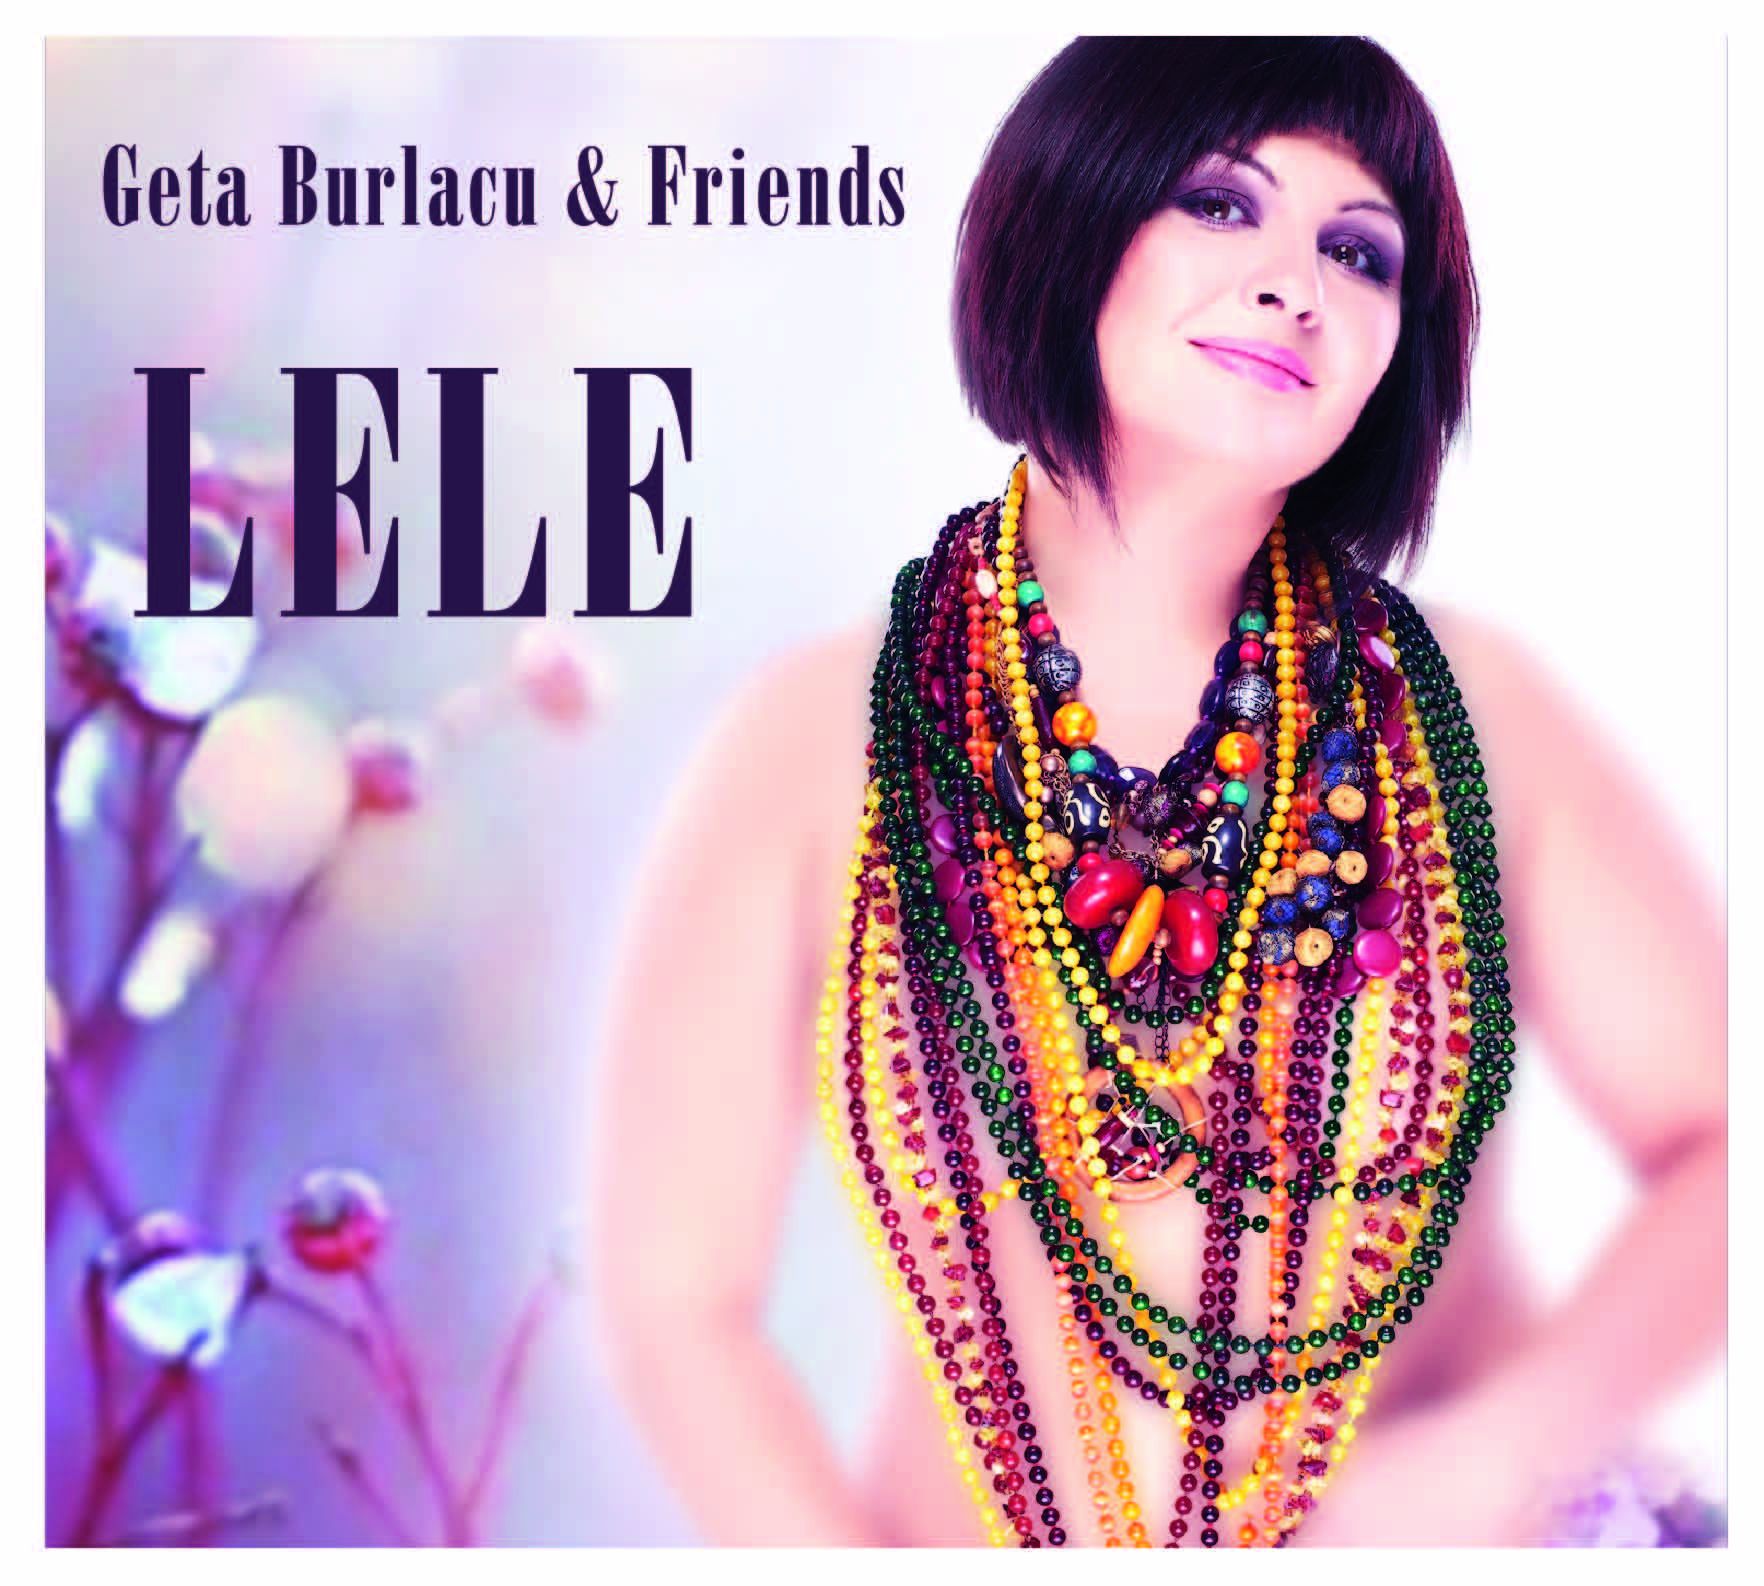 CD Geta Burlacu & Friends - Lele